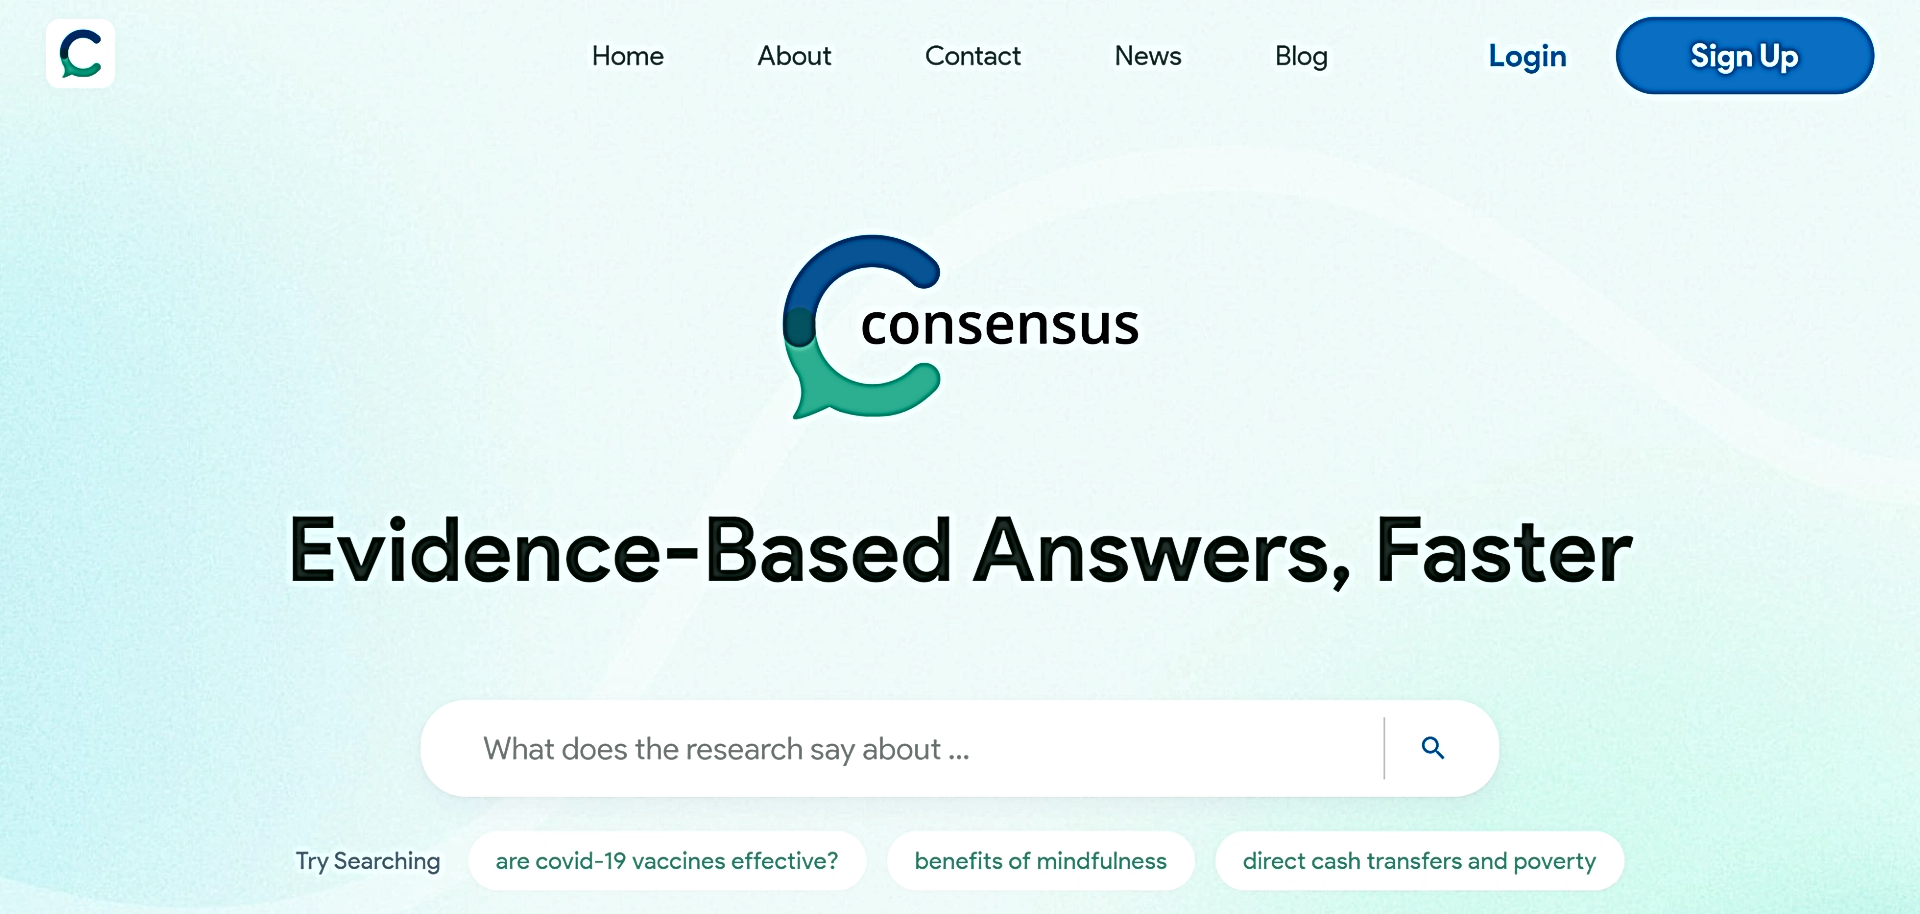 Consensus featured